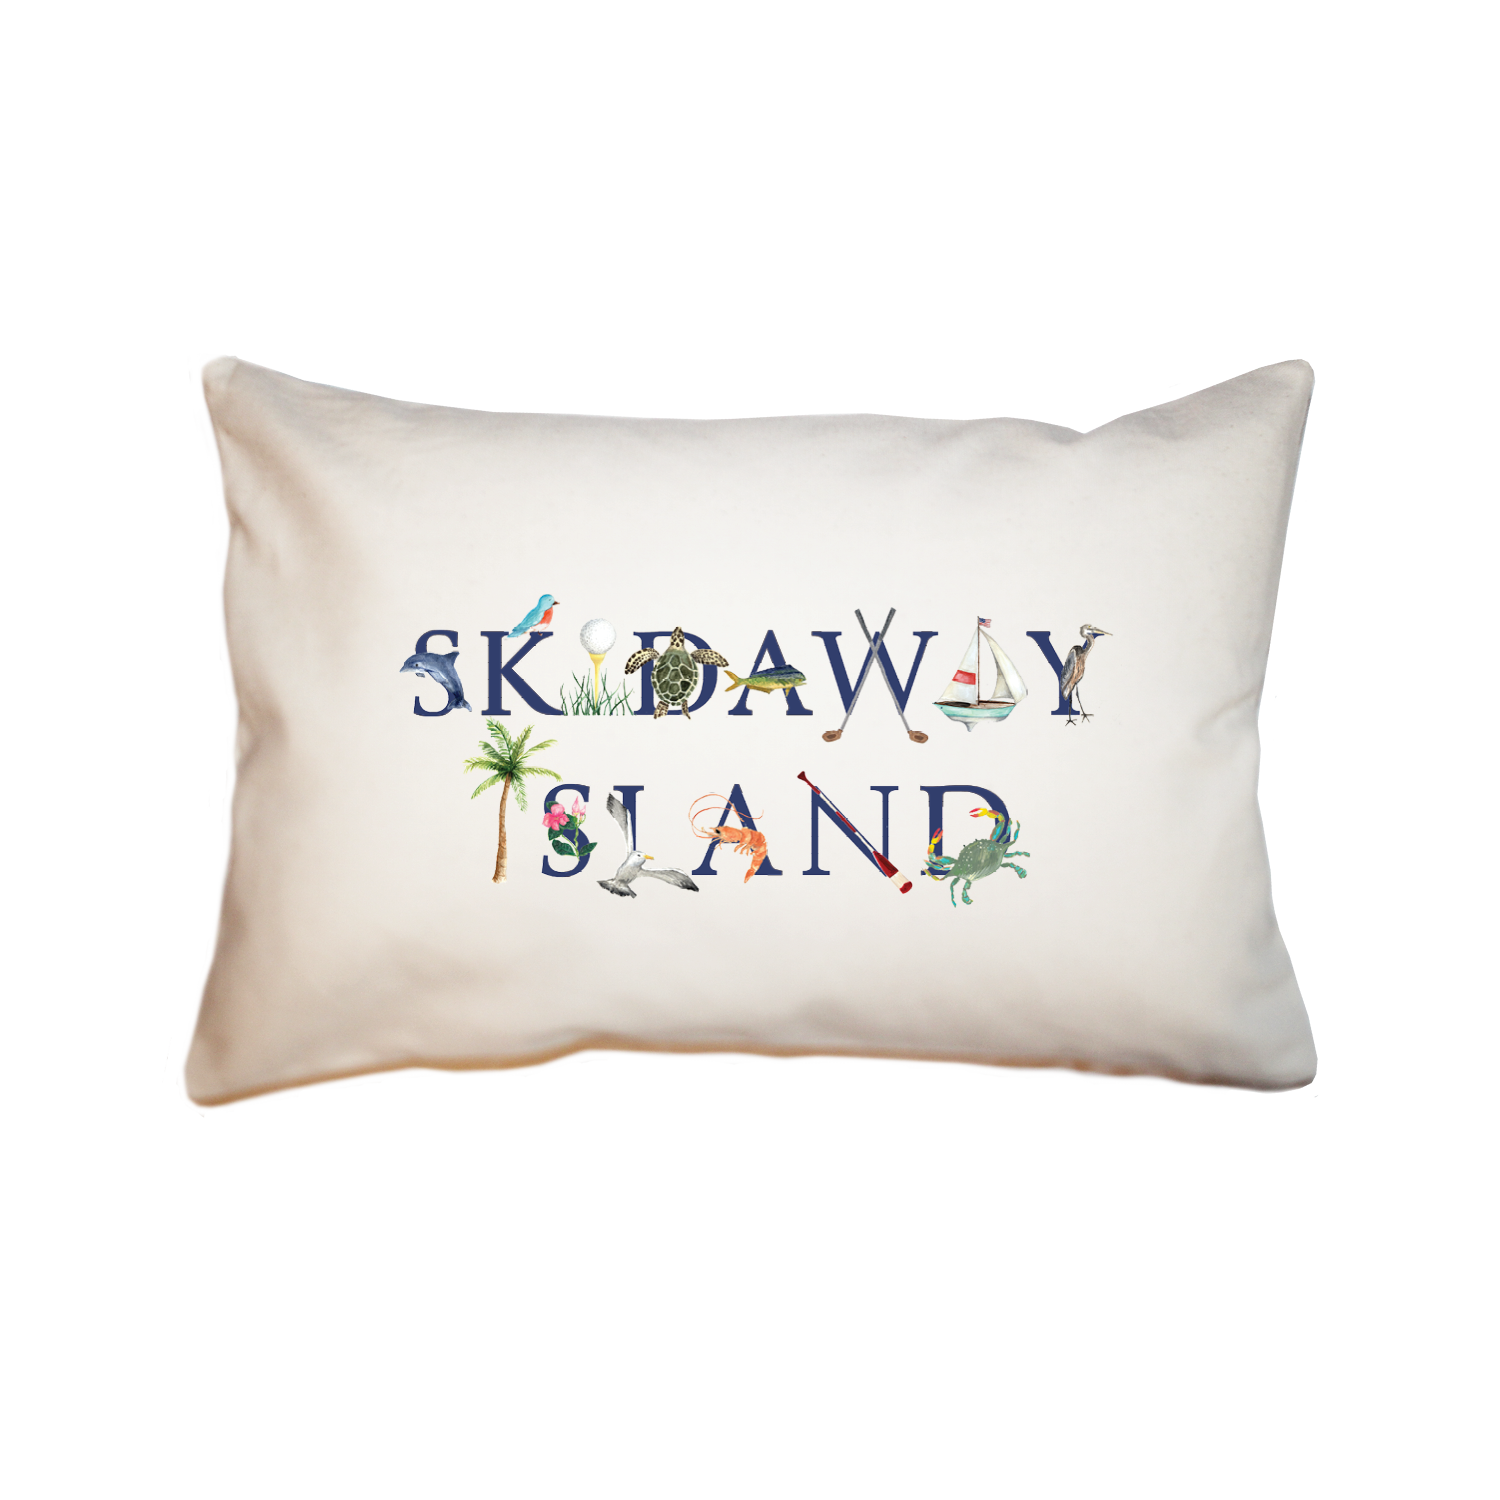 Skidaway Island large rectangle pillow